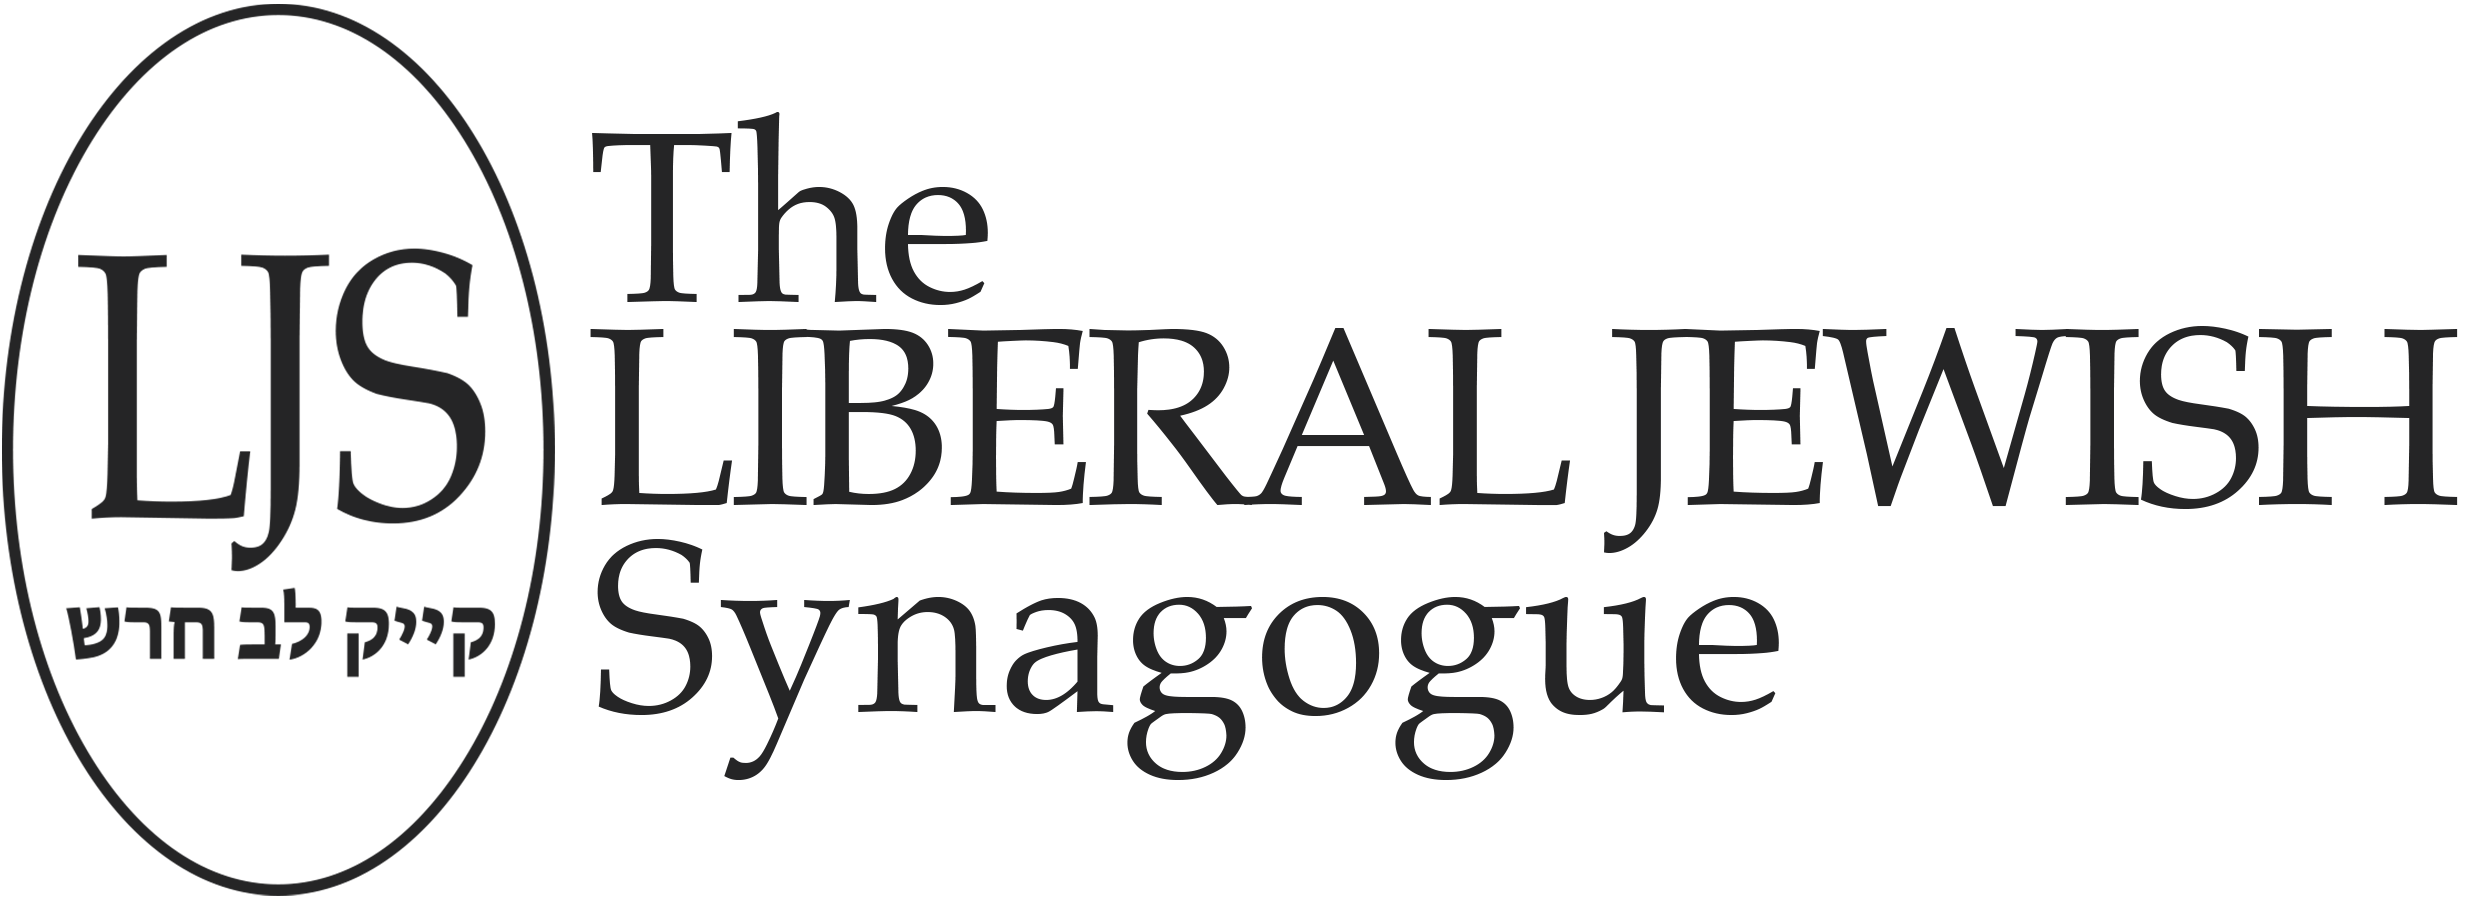 Synagogue Logo - The Liberal Jewish Synagogue